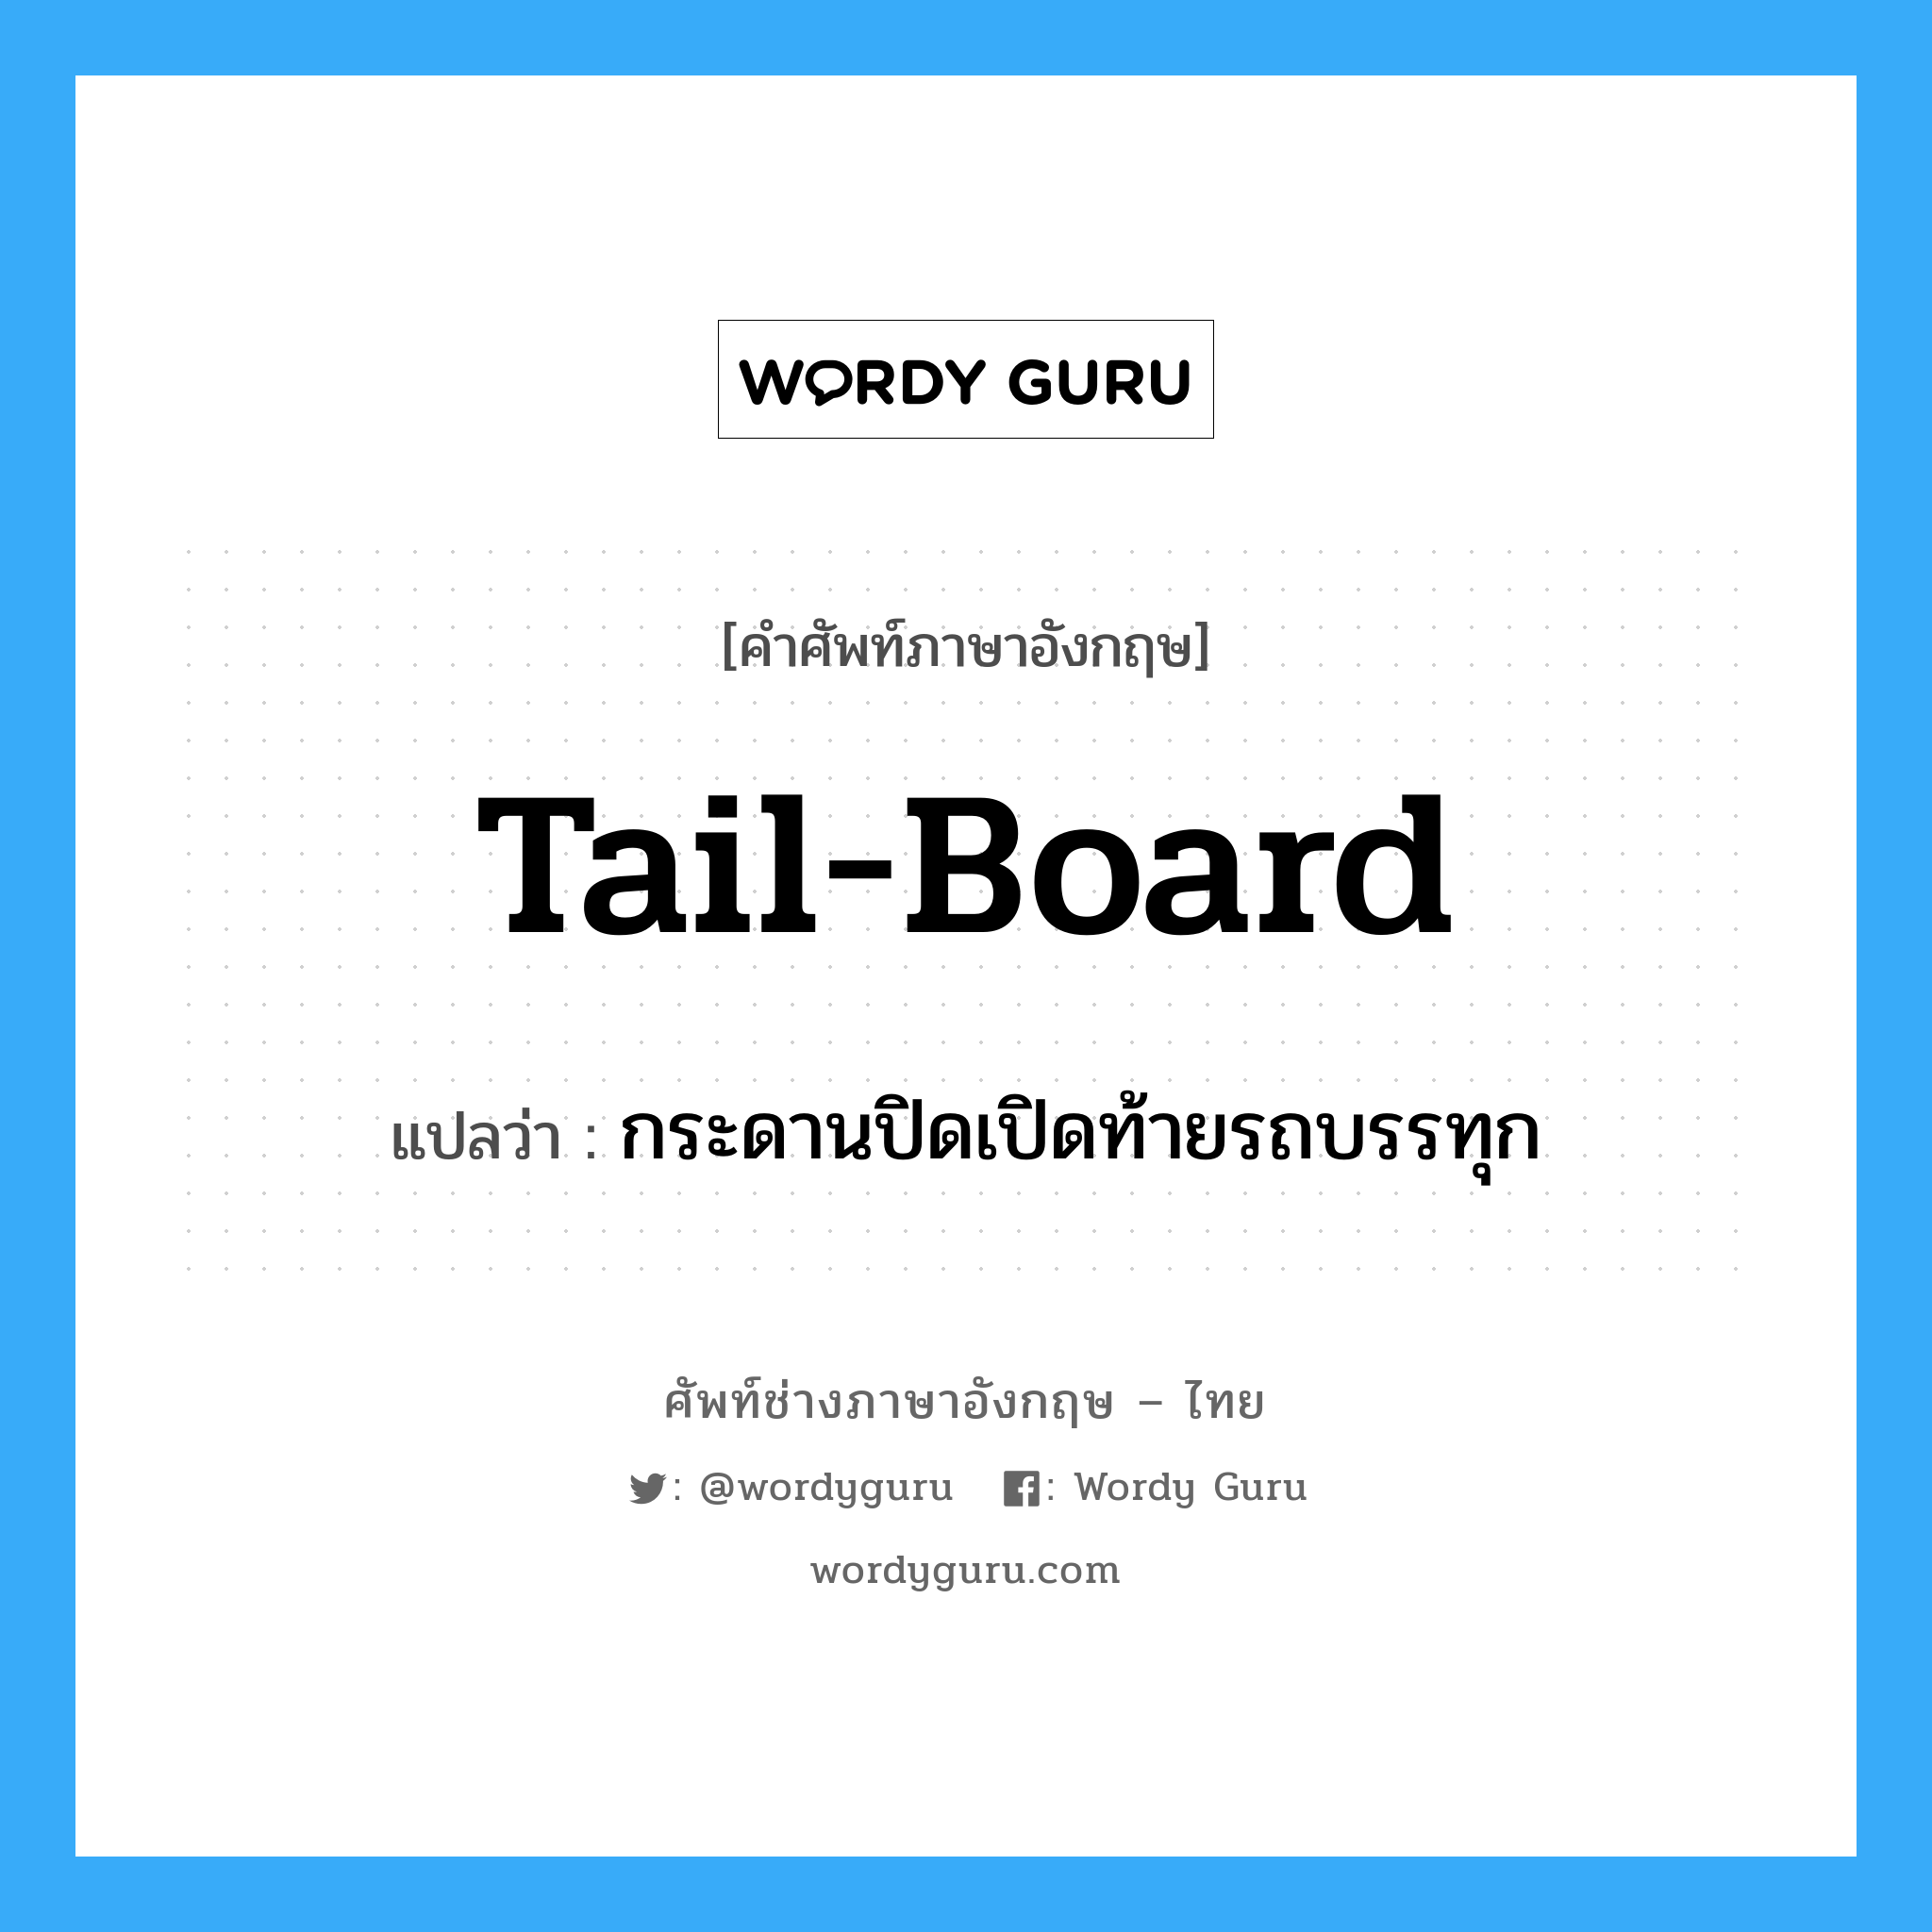 tail-board แปลว่า?, คำศัพท์ช่างภาษาอังกฤษ - ไทย tail-board คำศัพท์ภาษาอังกฤษ tail-board แปลว่า กระดานปิดเปิดท้ายรถบรรทุก